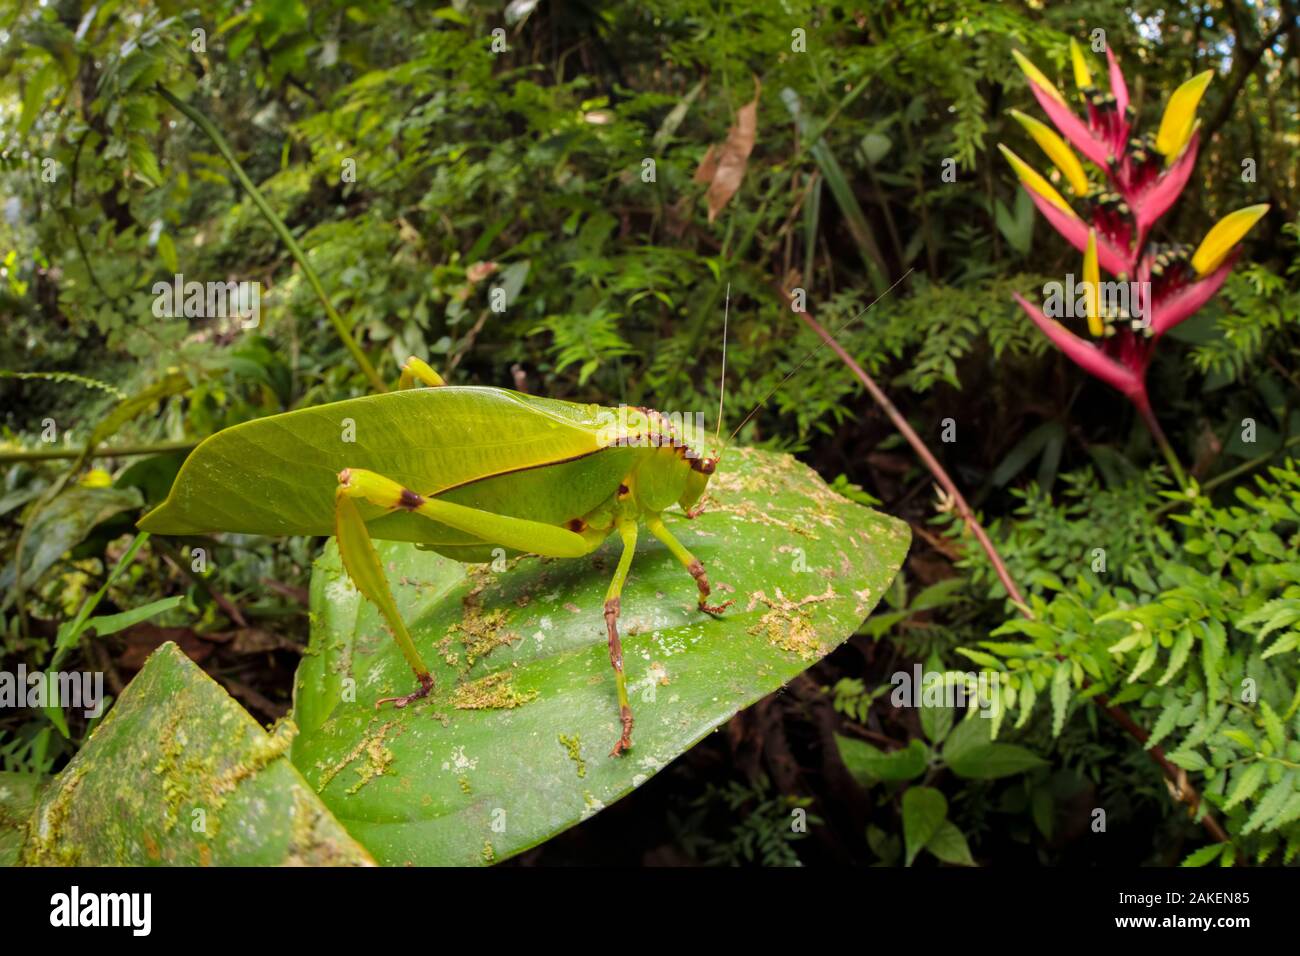 Los saltamontes americanos / Bush Cricket (Tettigoniidae) camuflado entre la vegetación del sotobosque del bosque nuboso. 1600 metros de altitud, la Reserva de la Biosfera del Manu, Perú. De noviembre. Foto de stock